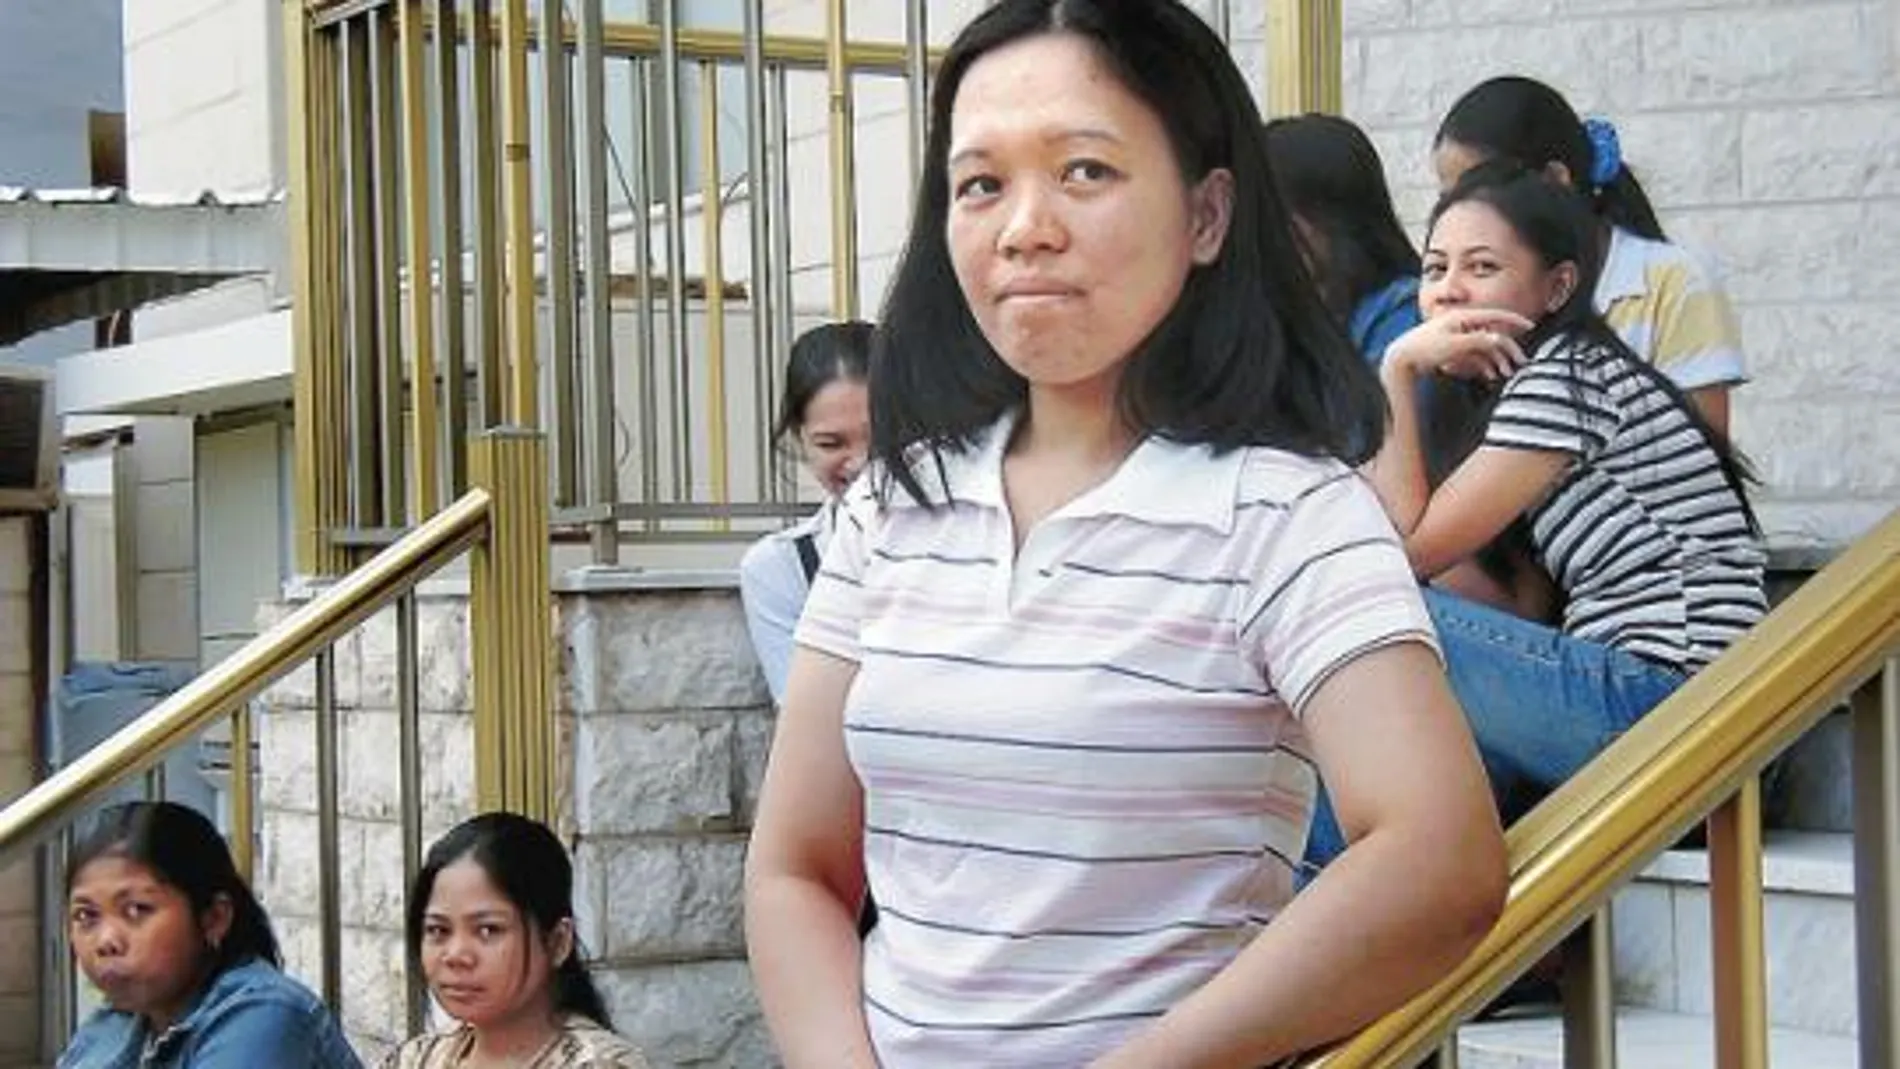 La joven filipina Chaneilyn Tartay, horas después de escapar de su empleadora kuwaití